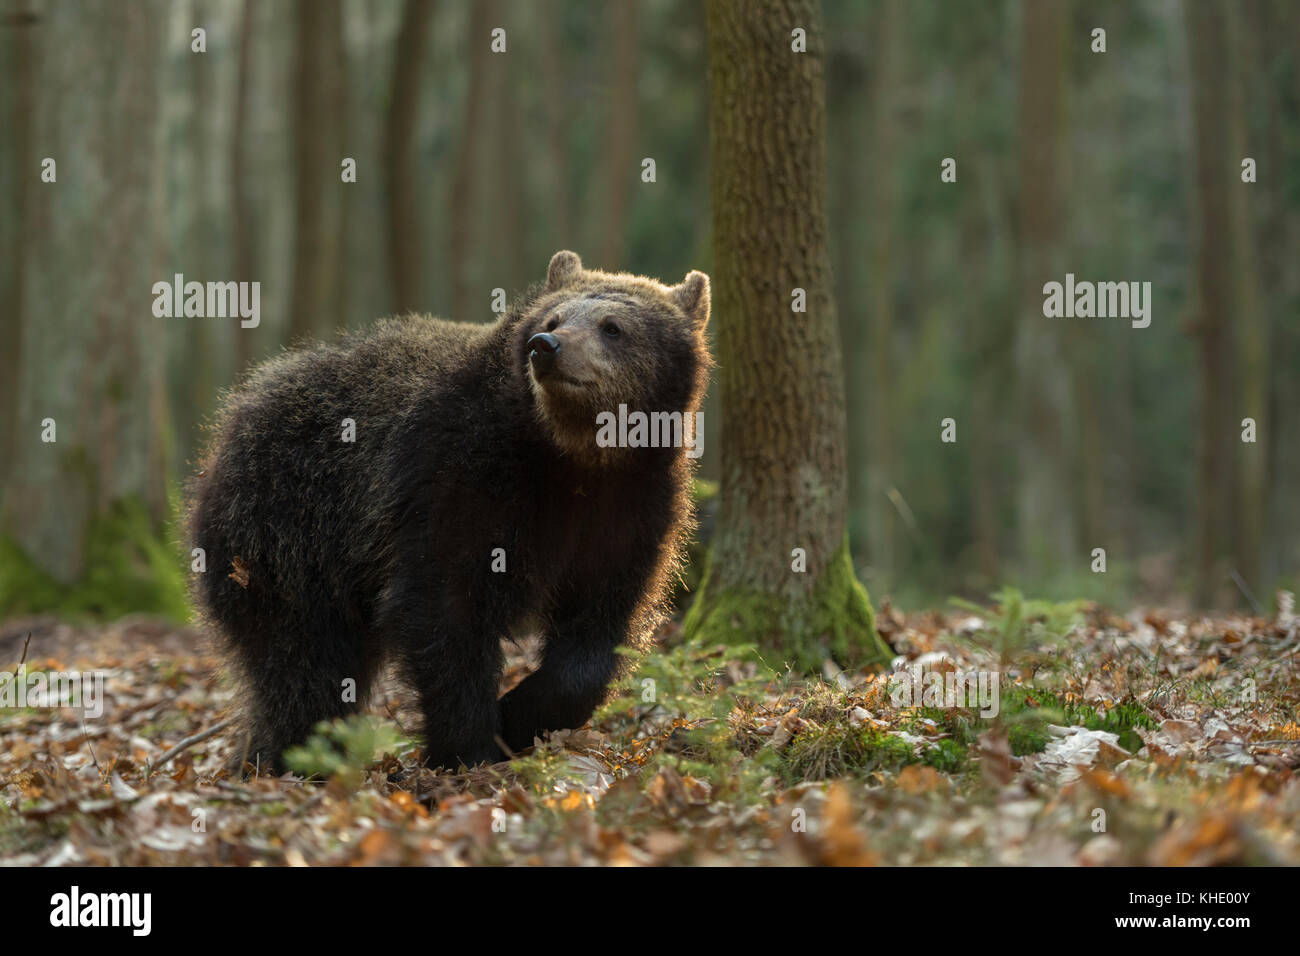 Europäischer Braunbär / Europäischer Braunbaer ( Ursus arctos ), junges Tier, schlendernd durch seinen Lebensraum, in natürlicher Umgebung, Europa. Stockfoto